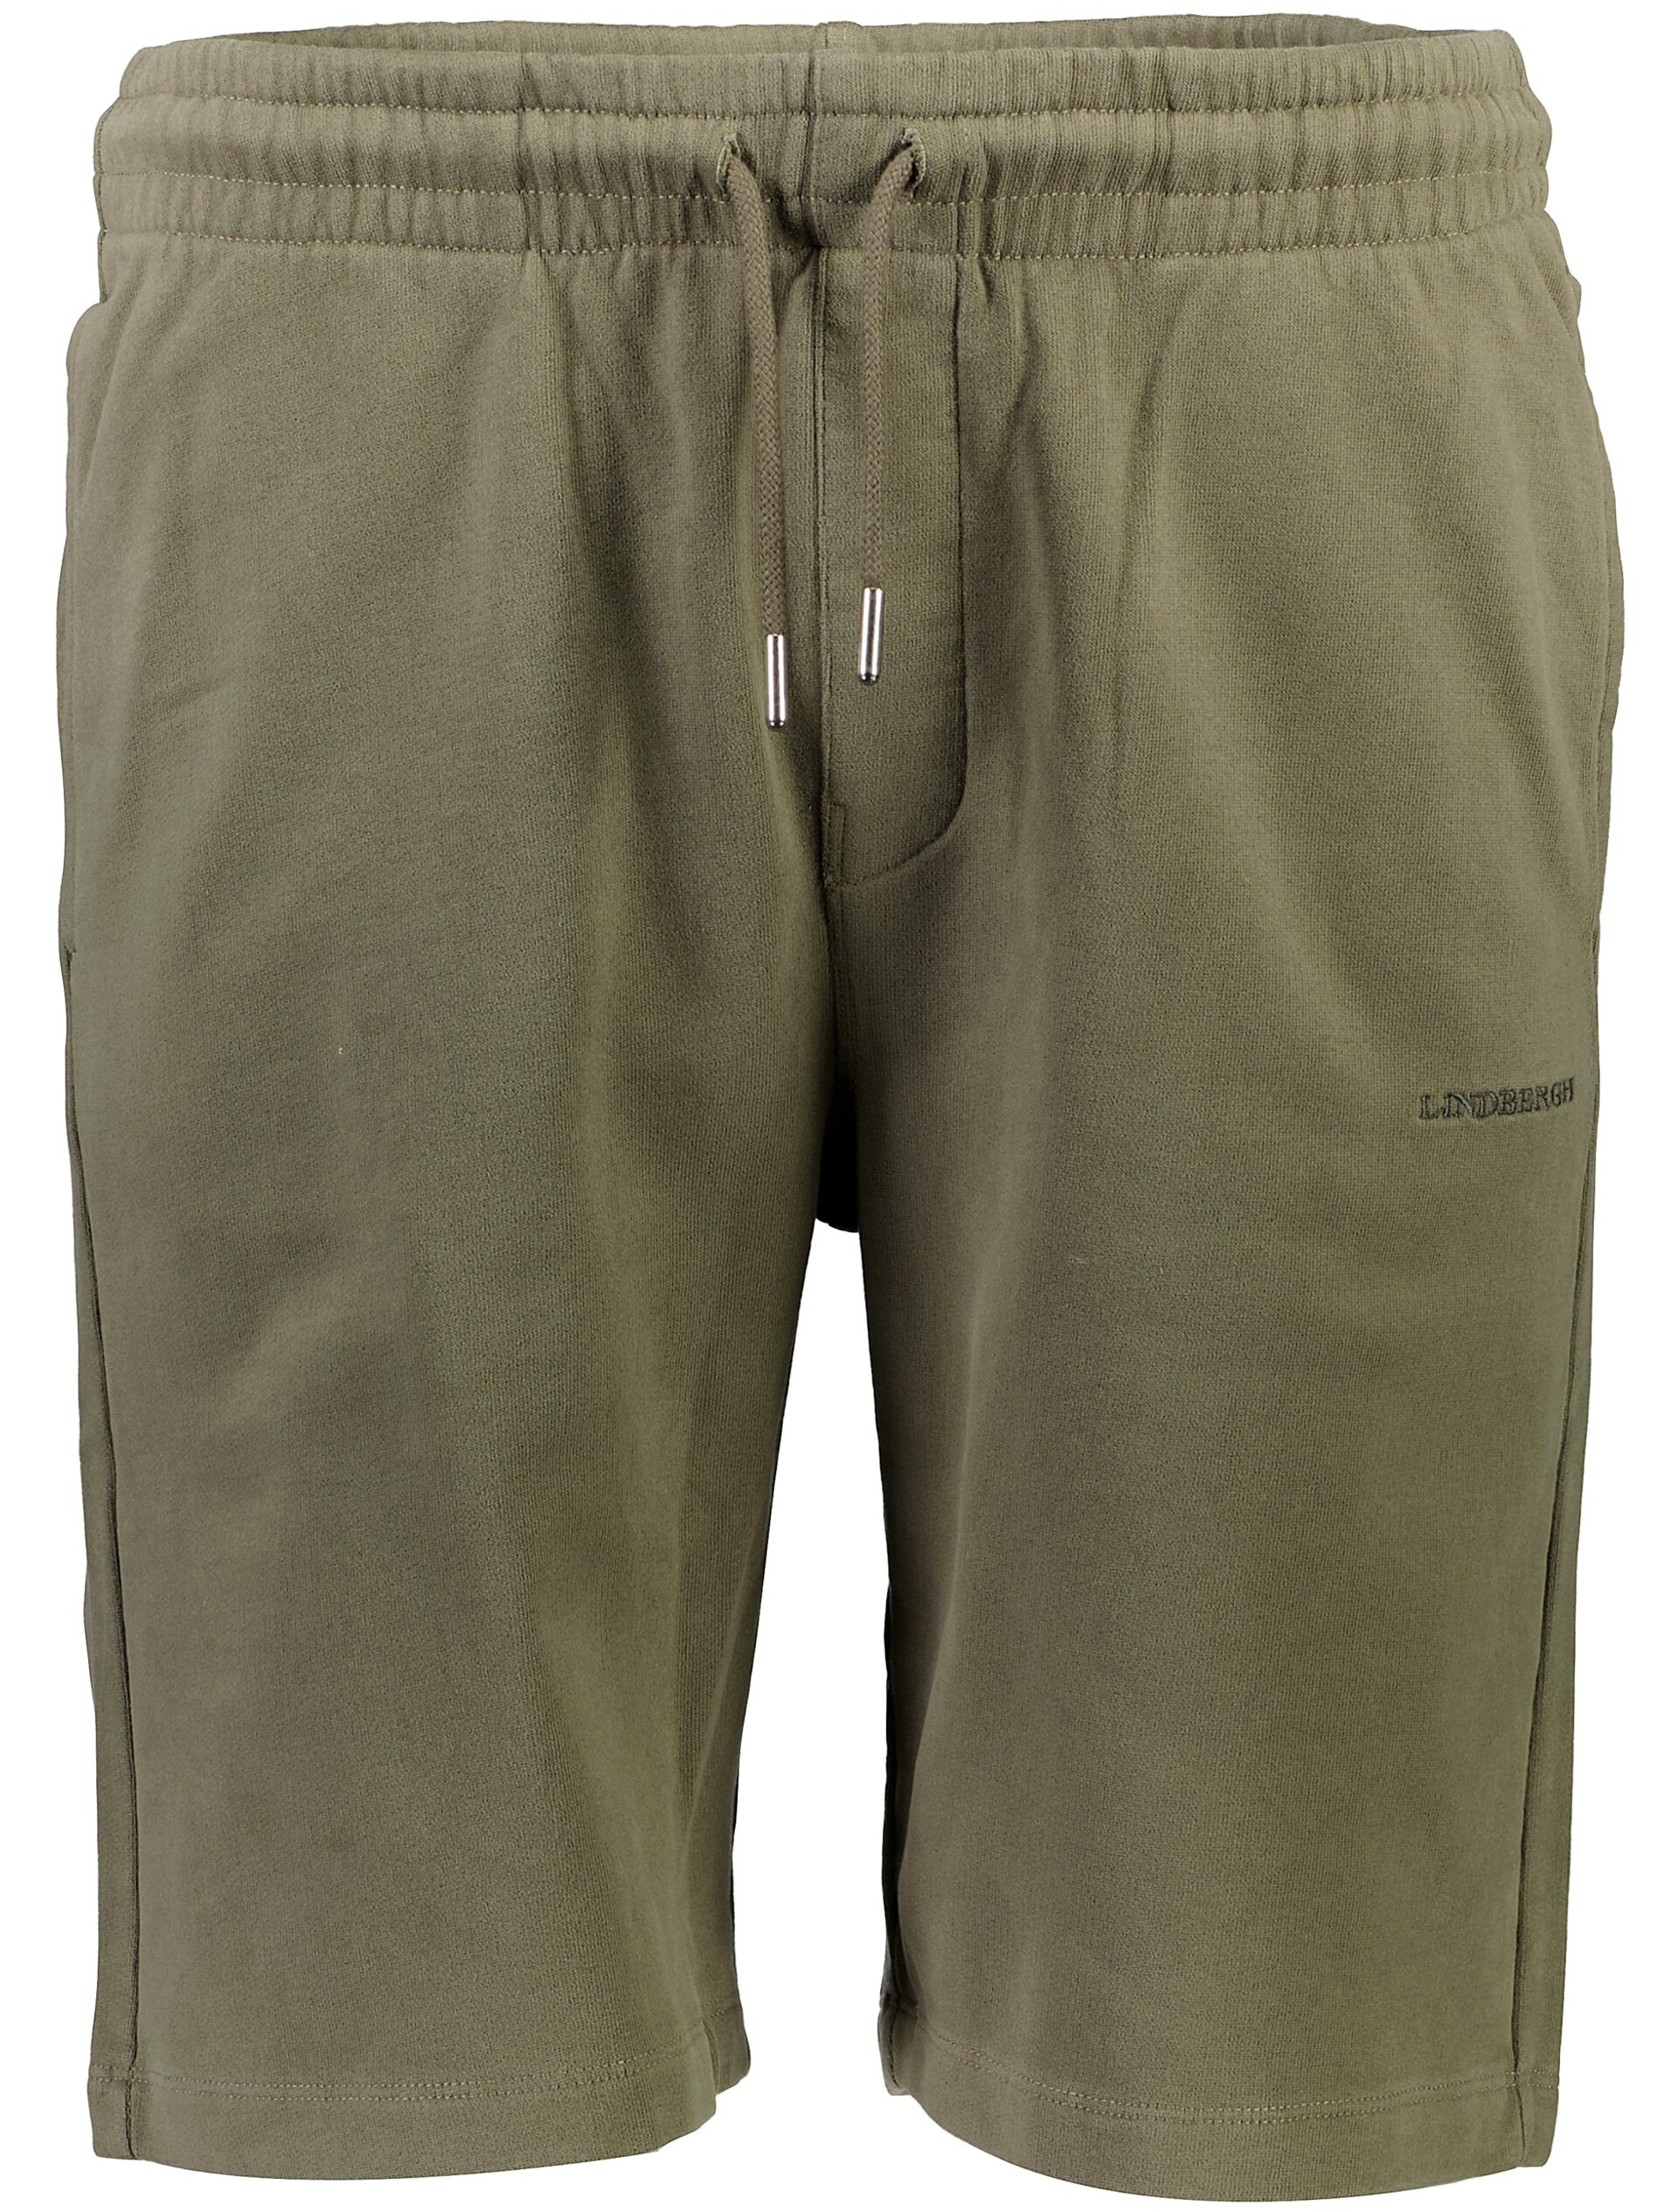 Lindbergh Casual shorts grön / lt dusty army